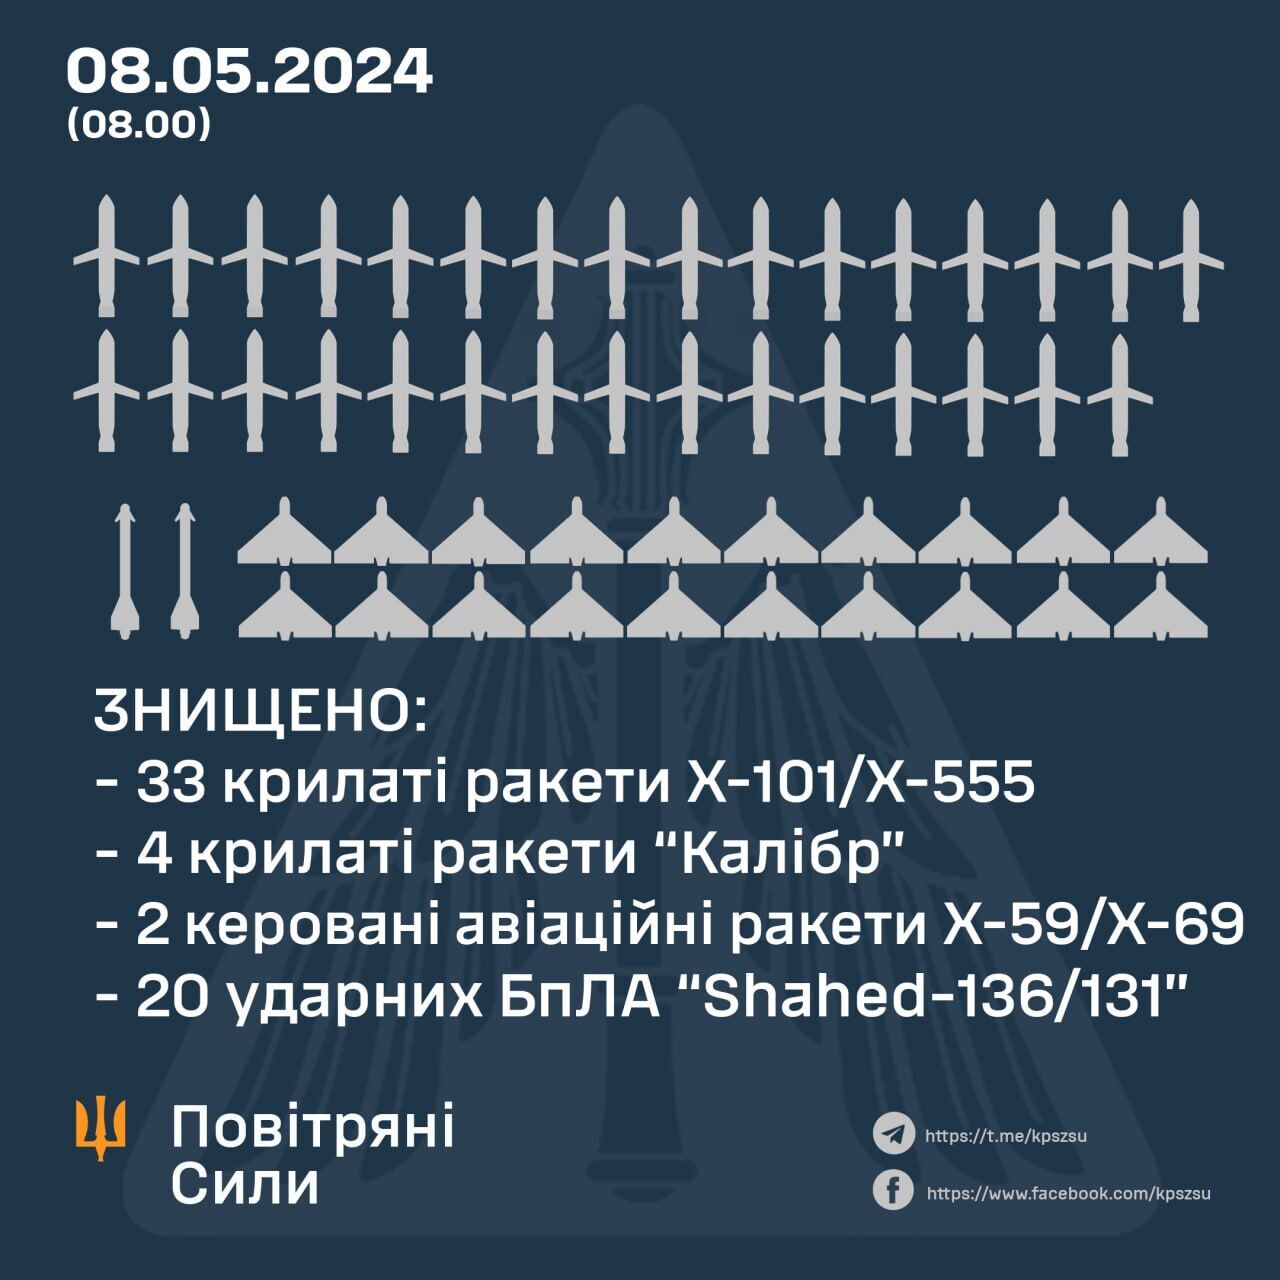 Rosja zaatakowała Ukrainę pociskami rakietowymi z Tu-95MS i Kalibr: uderzono w obiekty energetyczne w wielu regionach. Czytaj więcej